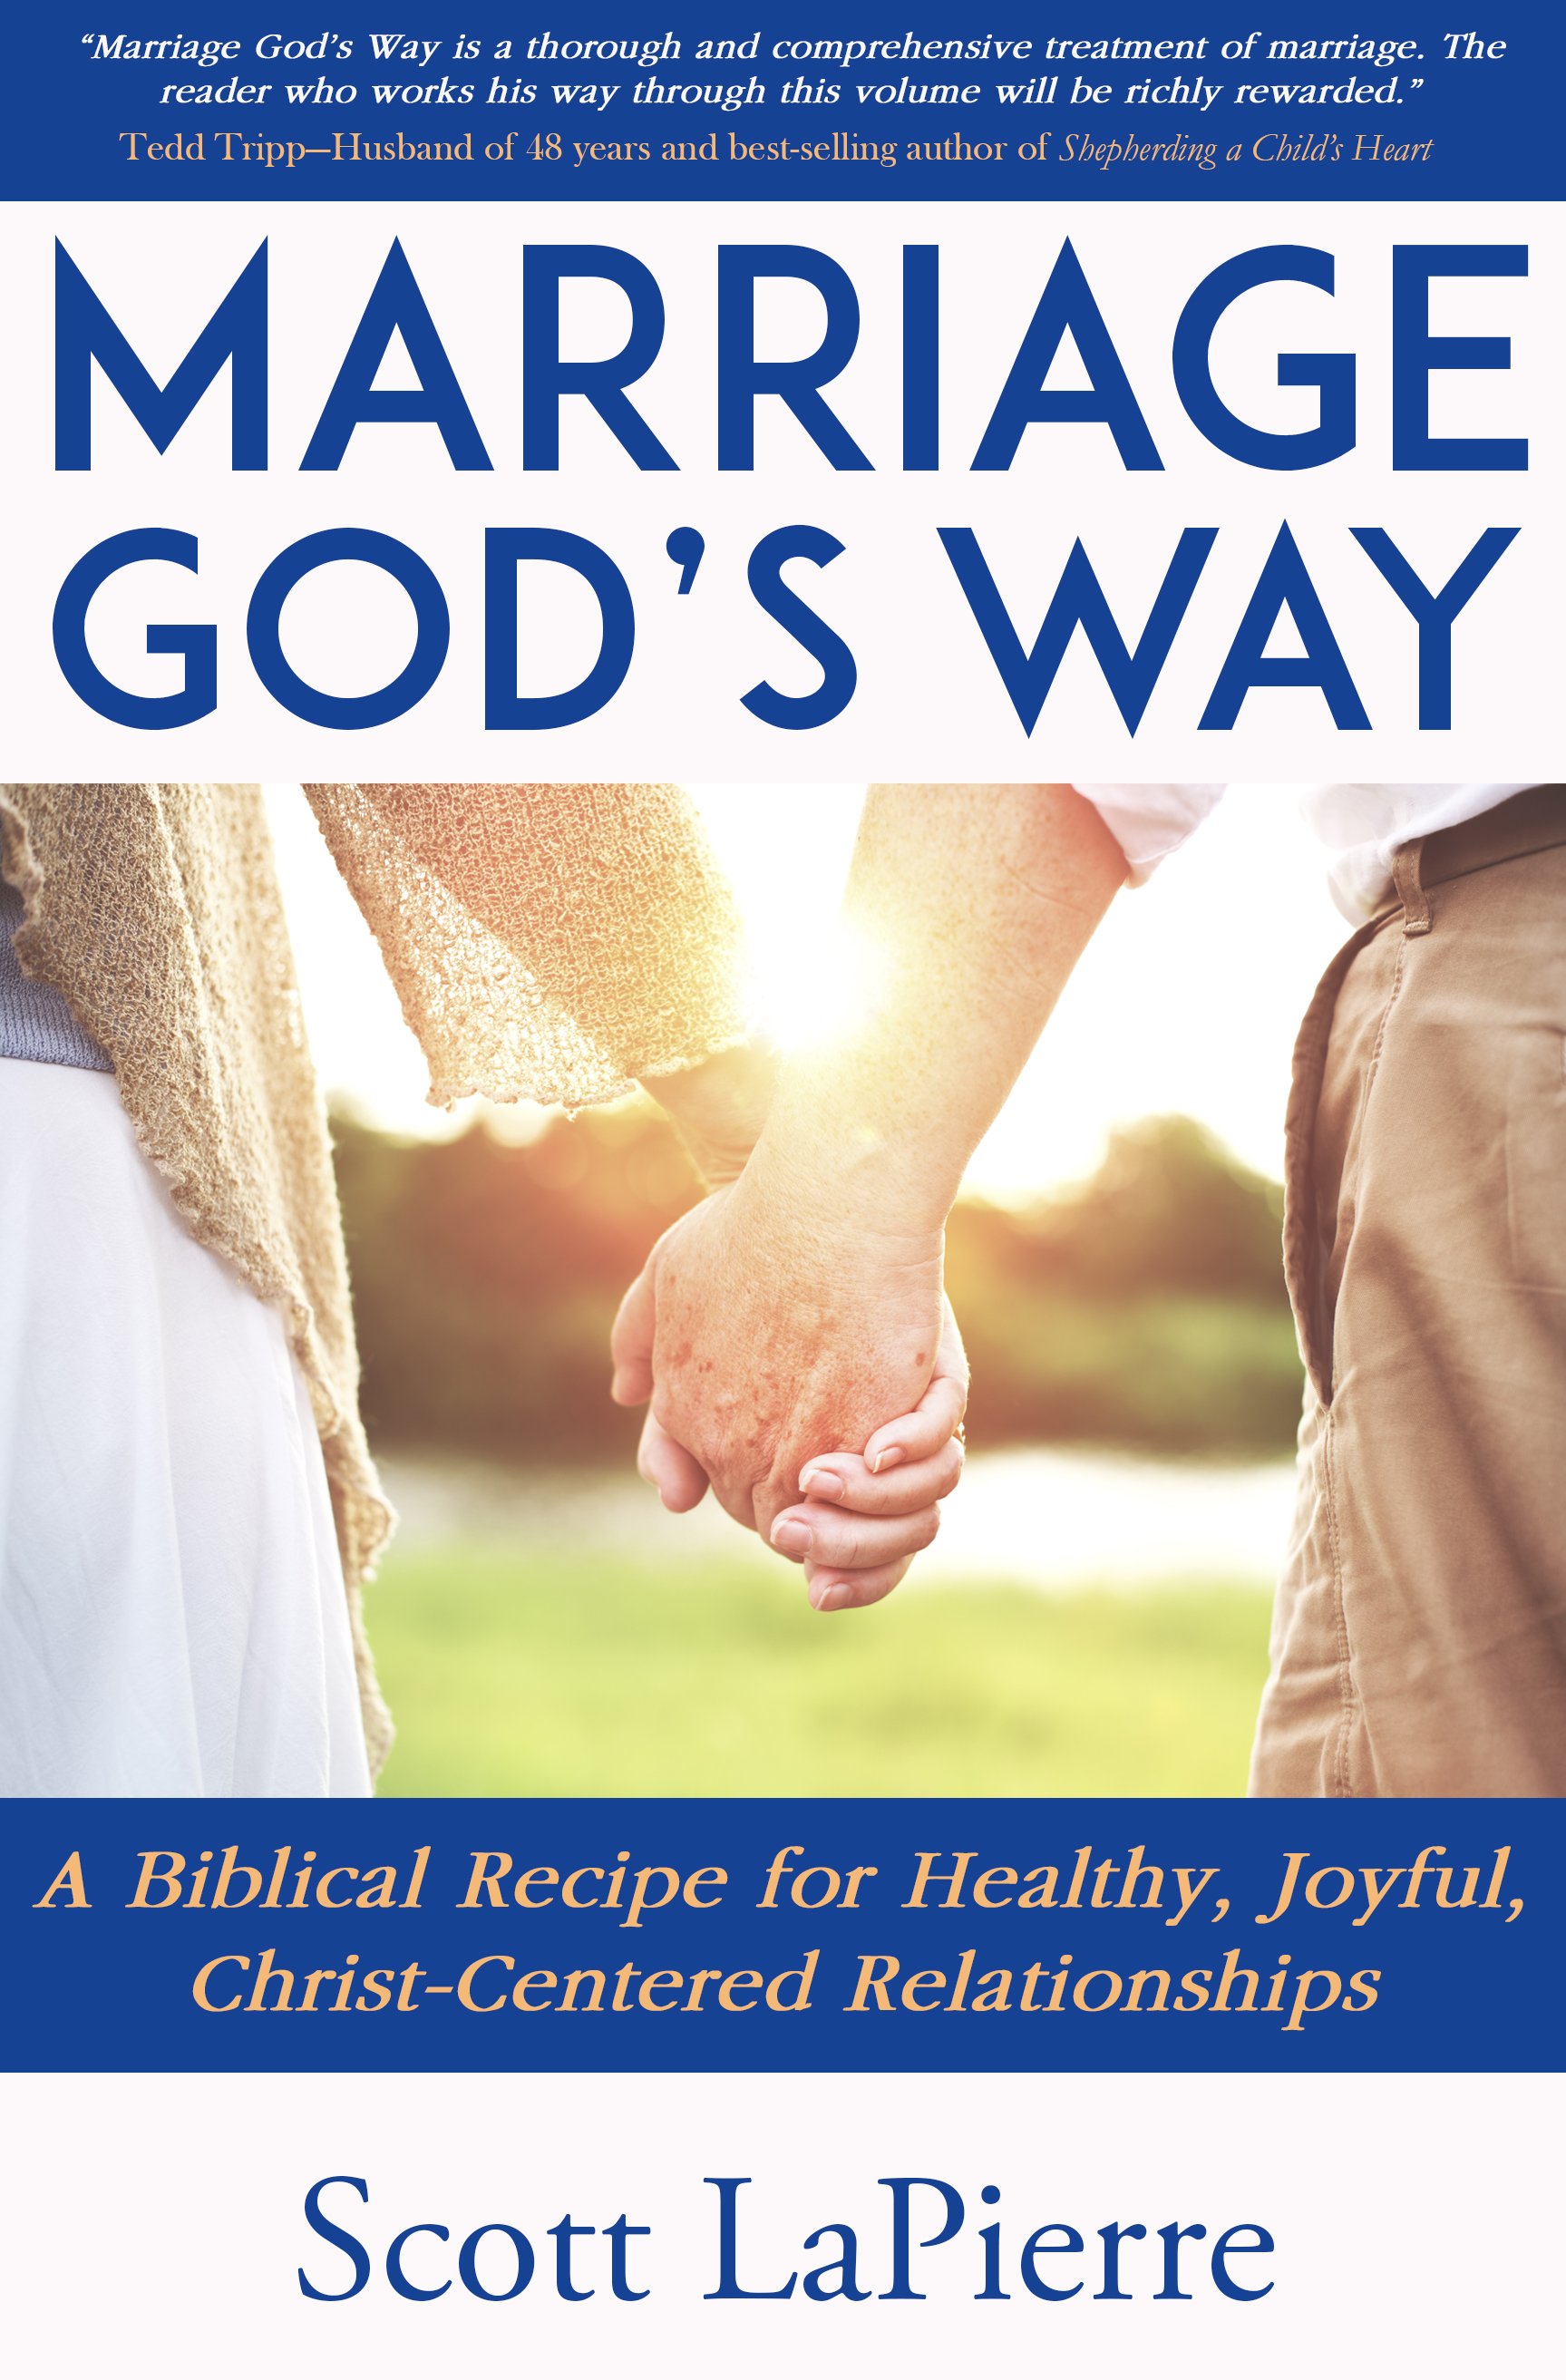 FREE: Marriage God’s Way by Scott LaPierre